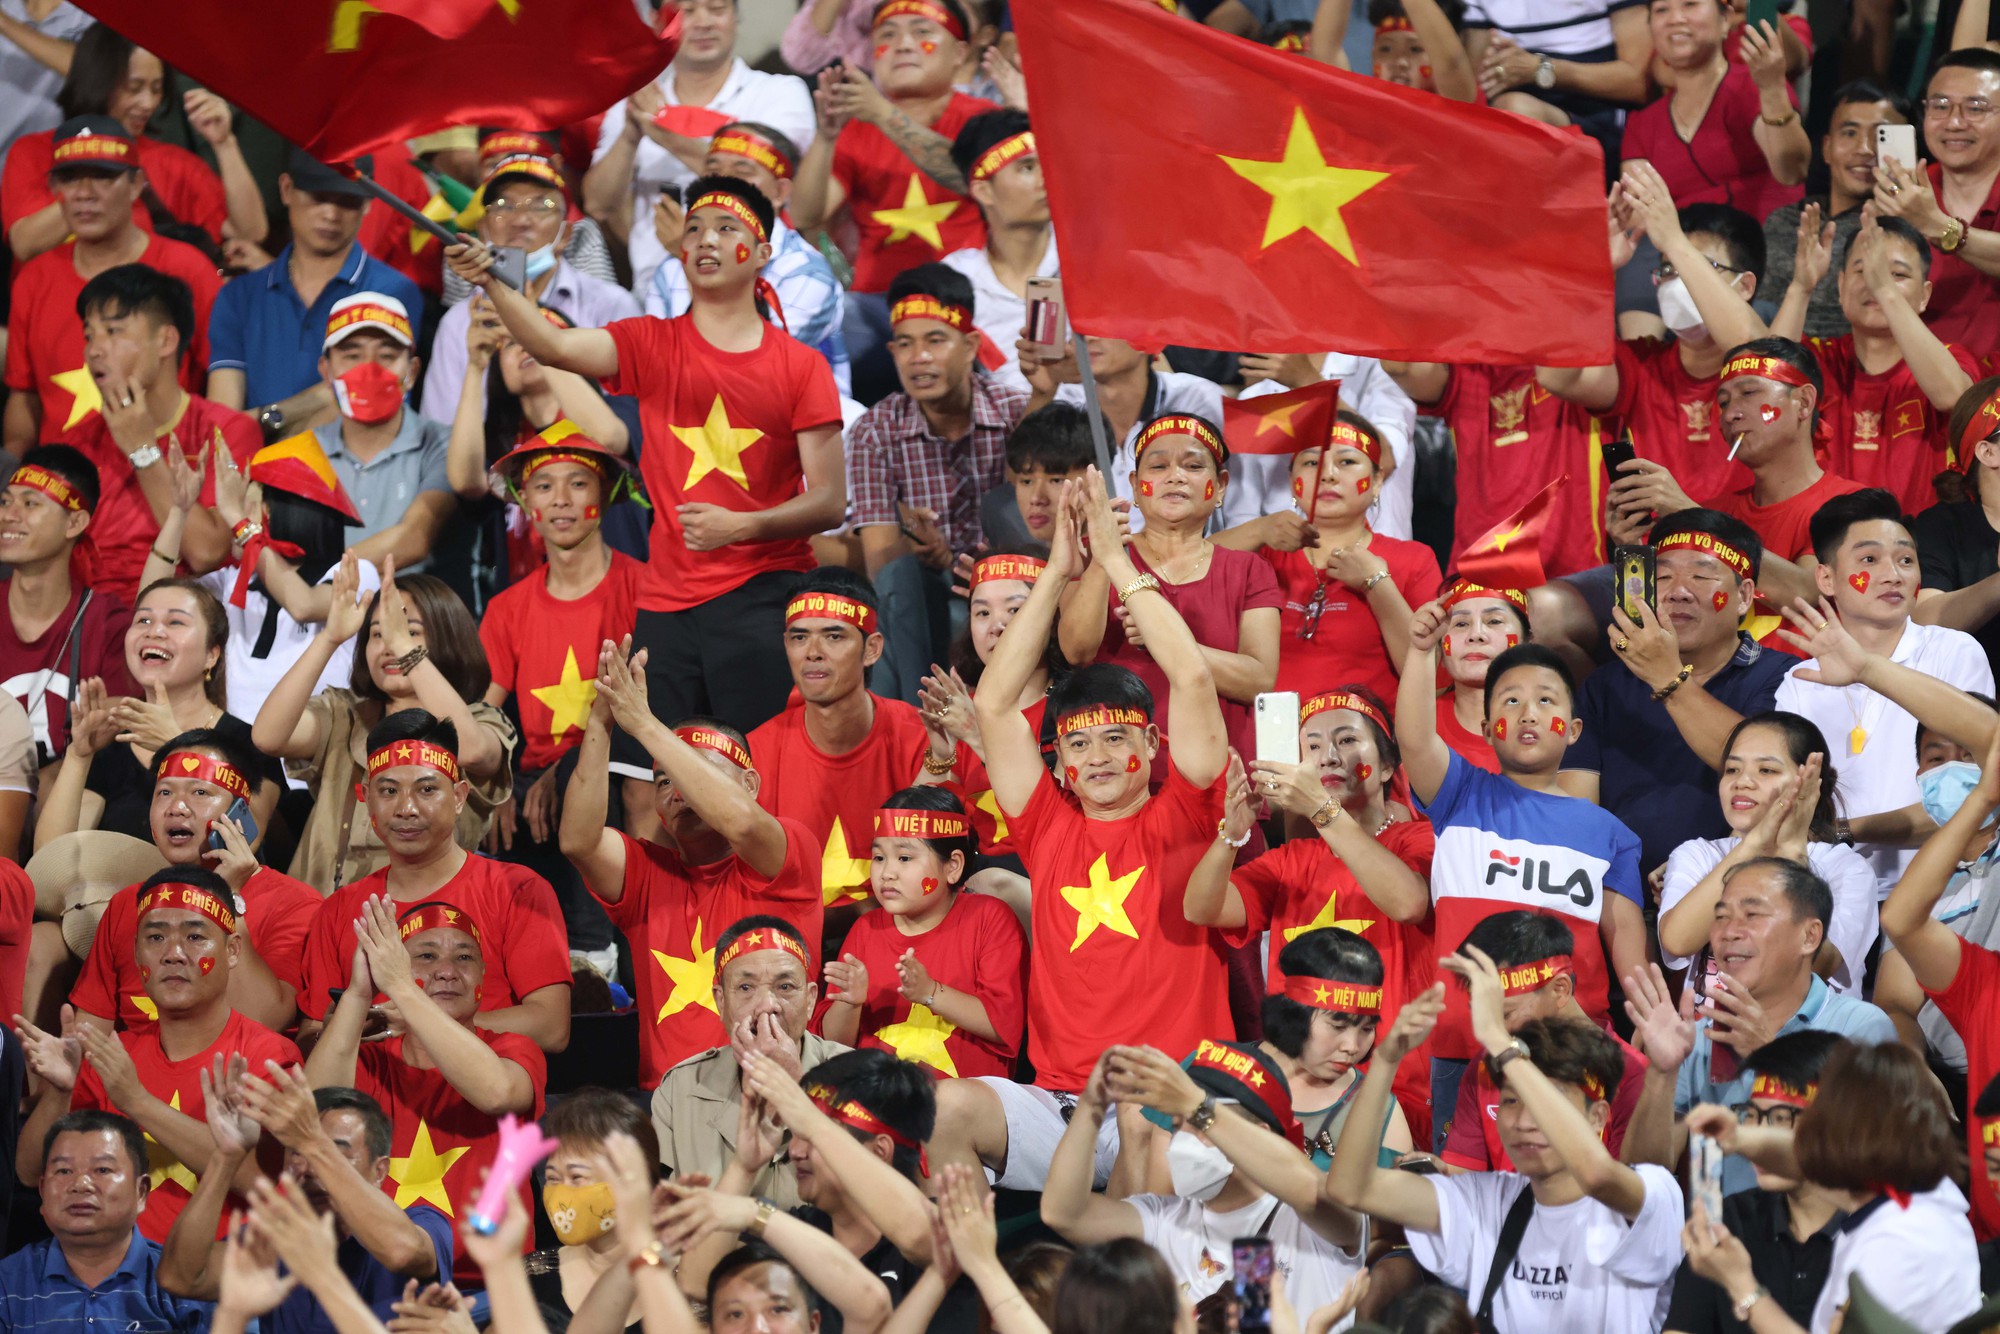 U23 Việt Nam: Với những hình ảnh đầy hào hứng và sự cổ vũ không ngừng nghỉ của cộng đồng, U23 Việt Nam đã khiến của người hâm mộ yêu thích và cảm thấy hạnh phúc. Xem lại những khoảnh khắc đầy cảm xúc của đội tuyển sẽ giúp bạn cảm nhận được niềm vui của môn thể thao đá banh.